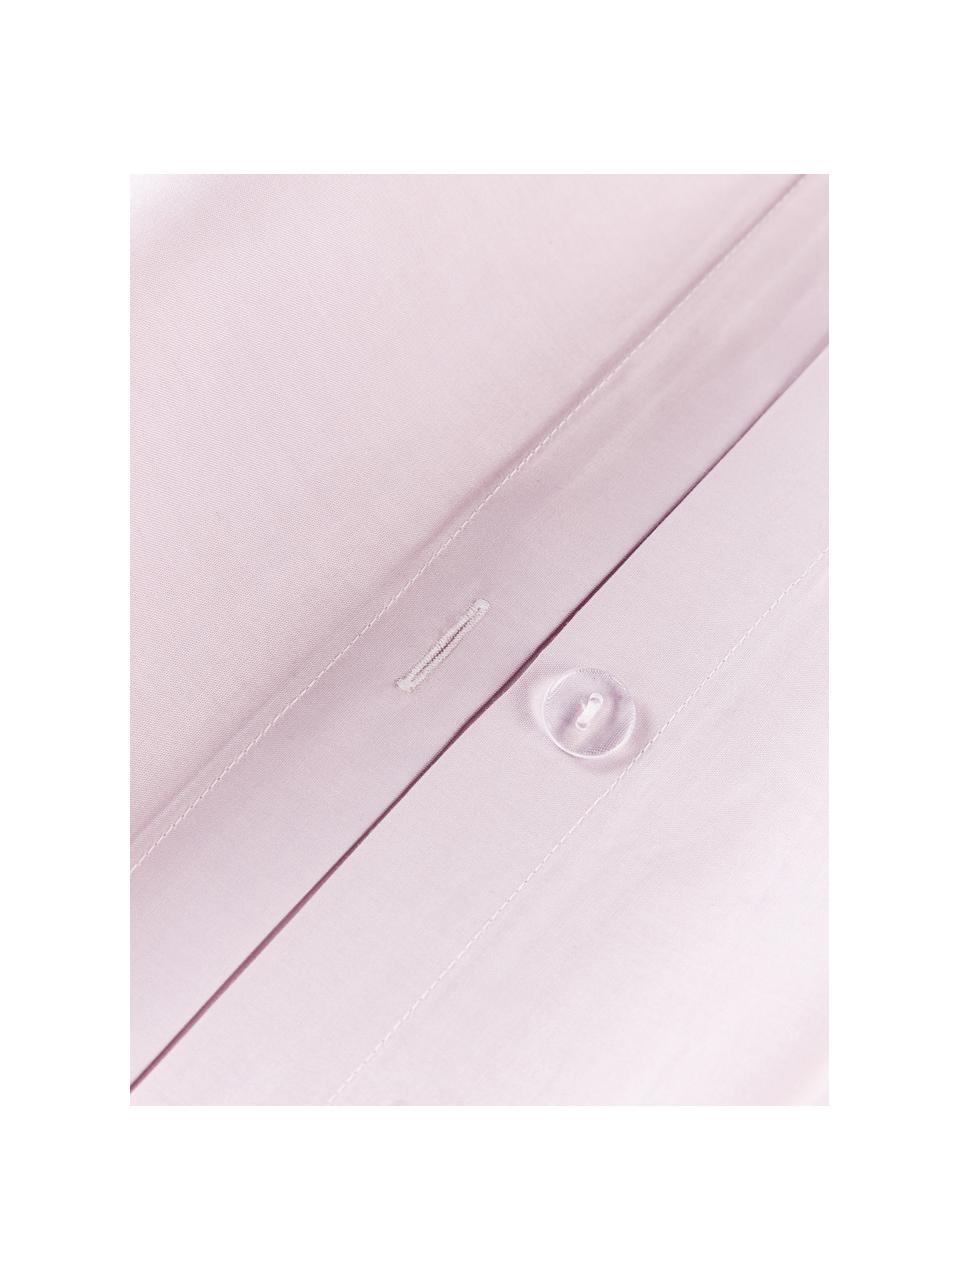 Copripiumino in cotone percalle Elsie, Lavanda, Larg. 200 x Lung. 200 cm